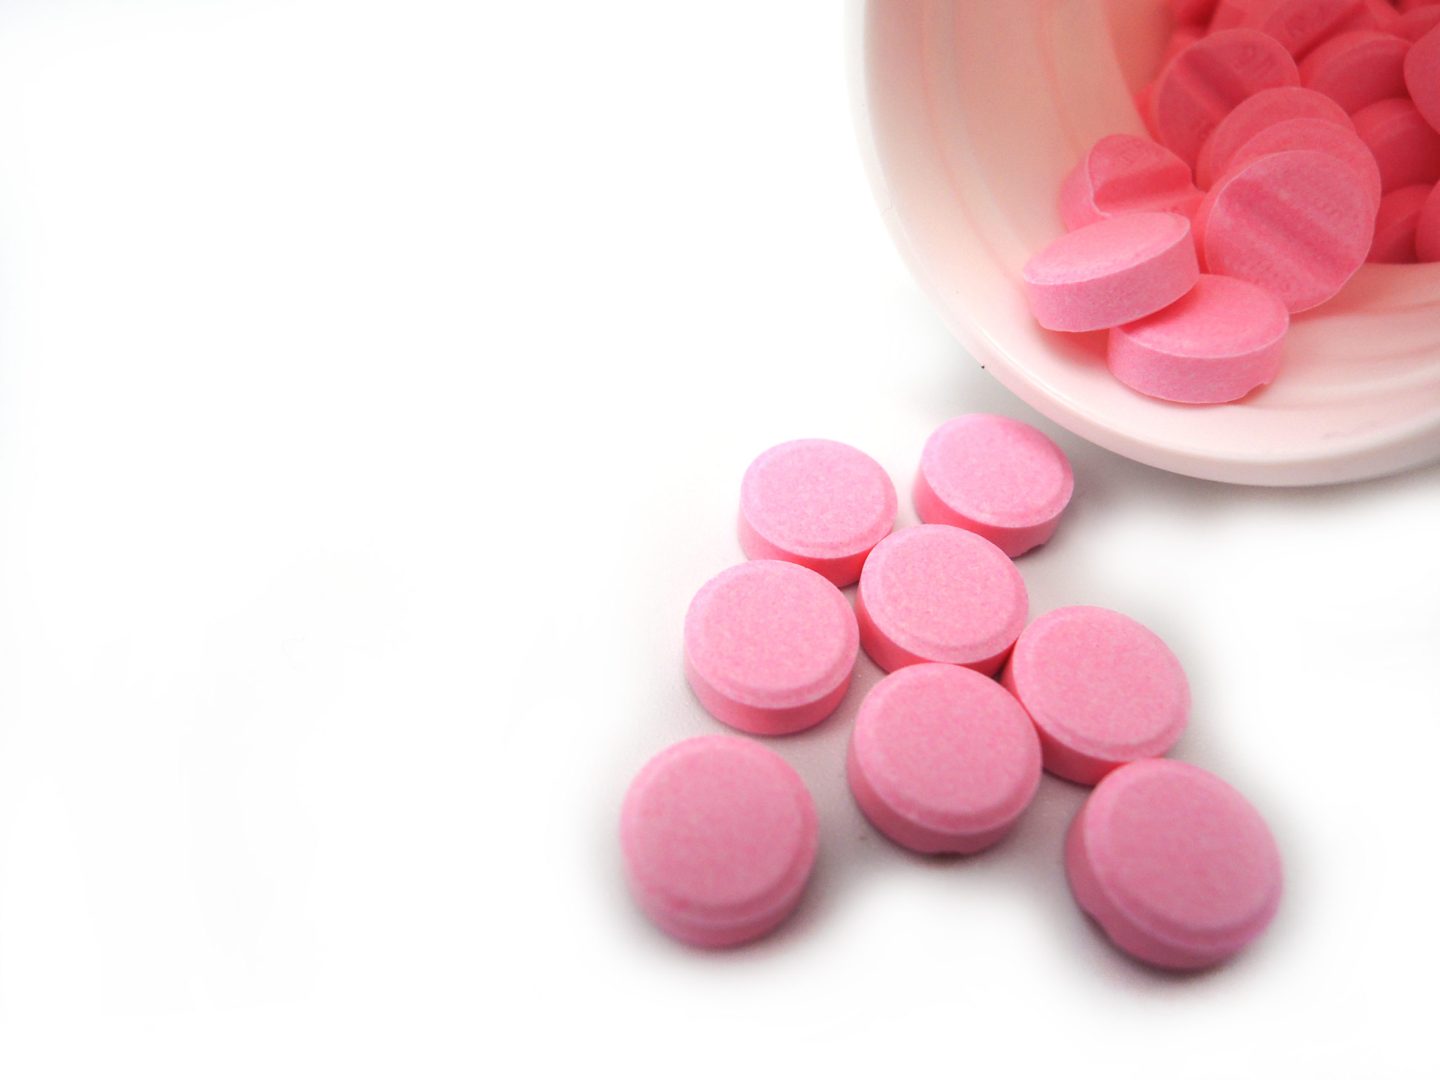 دواء الوارفارين: الاستخدام ومضادات الاستطباب والتأثيرات الجانبية والجرعات